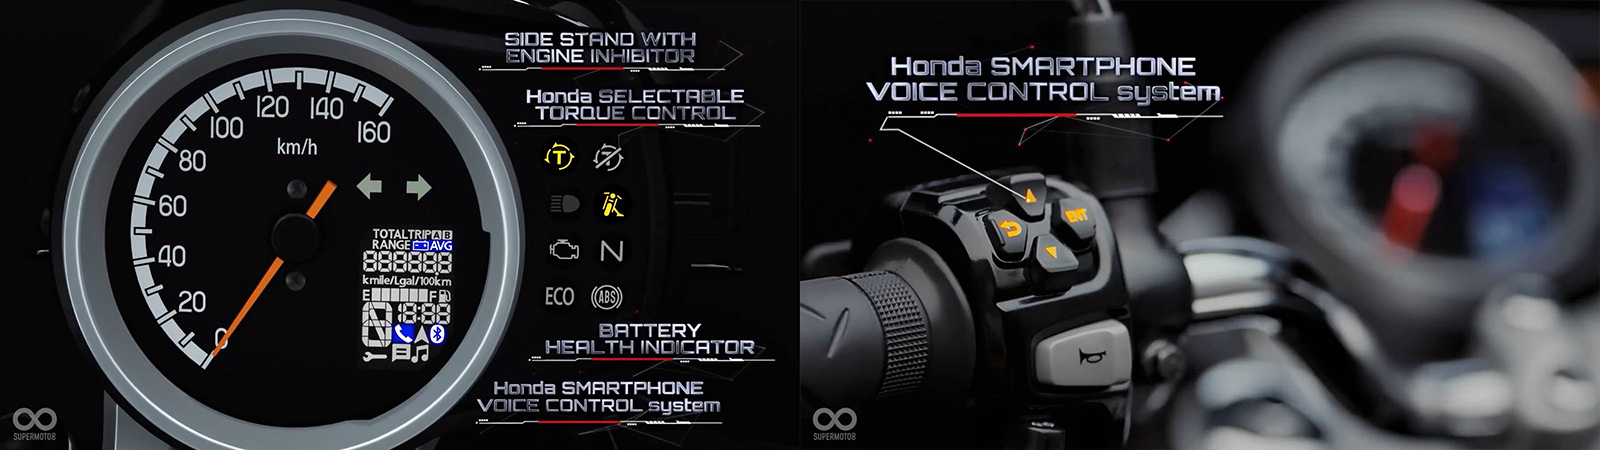 儀表使用指針配小液晶顯示，並且擁有HSVCS語音控制系統，可進行導航、音樂播放等功能